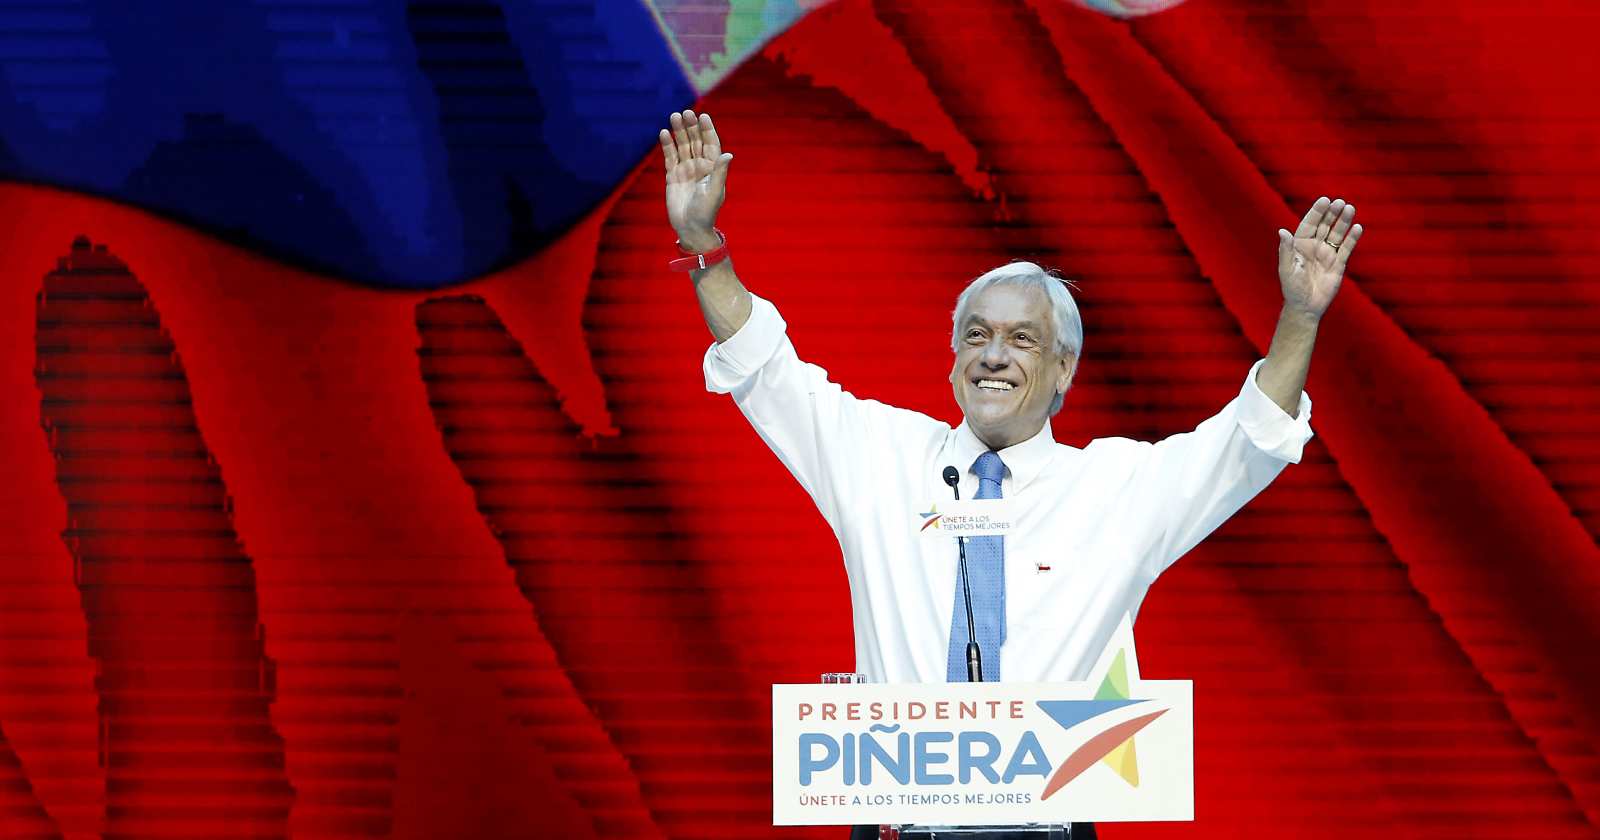 Piñera retiro